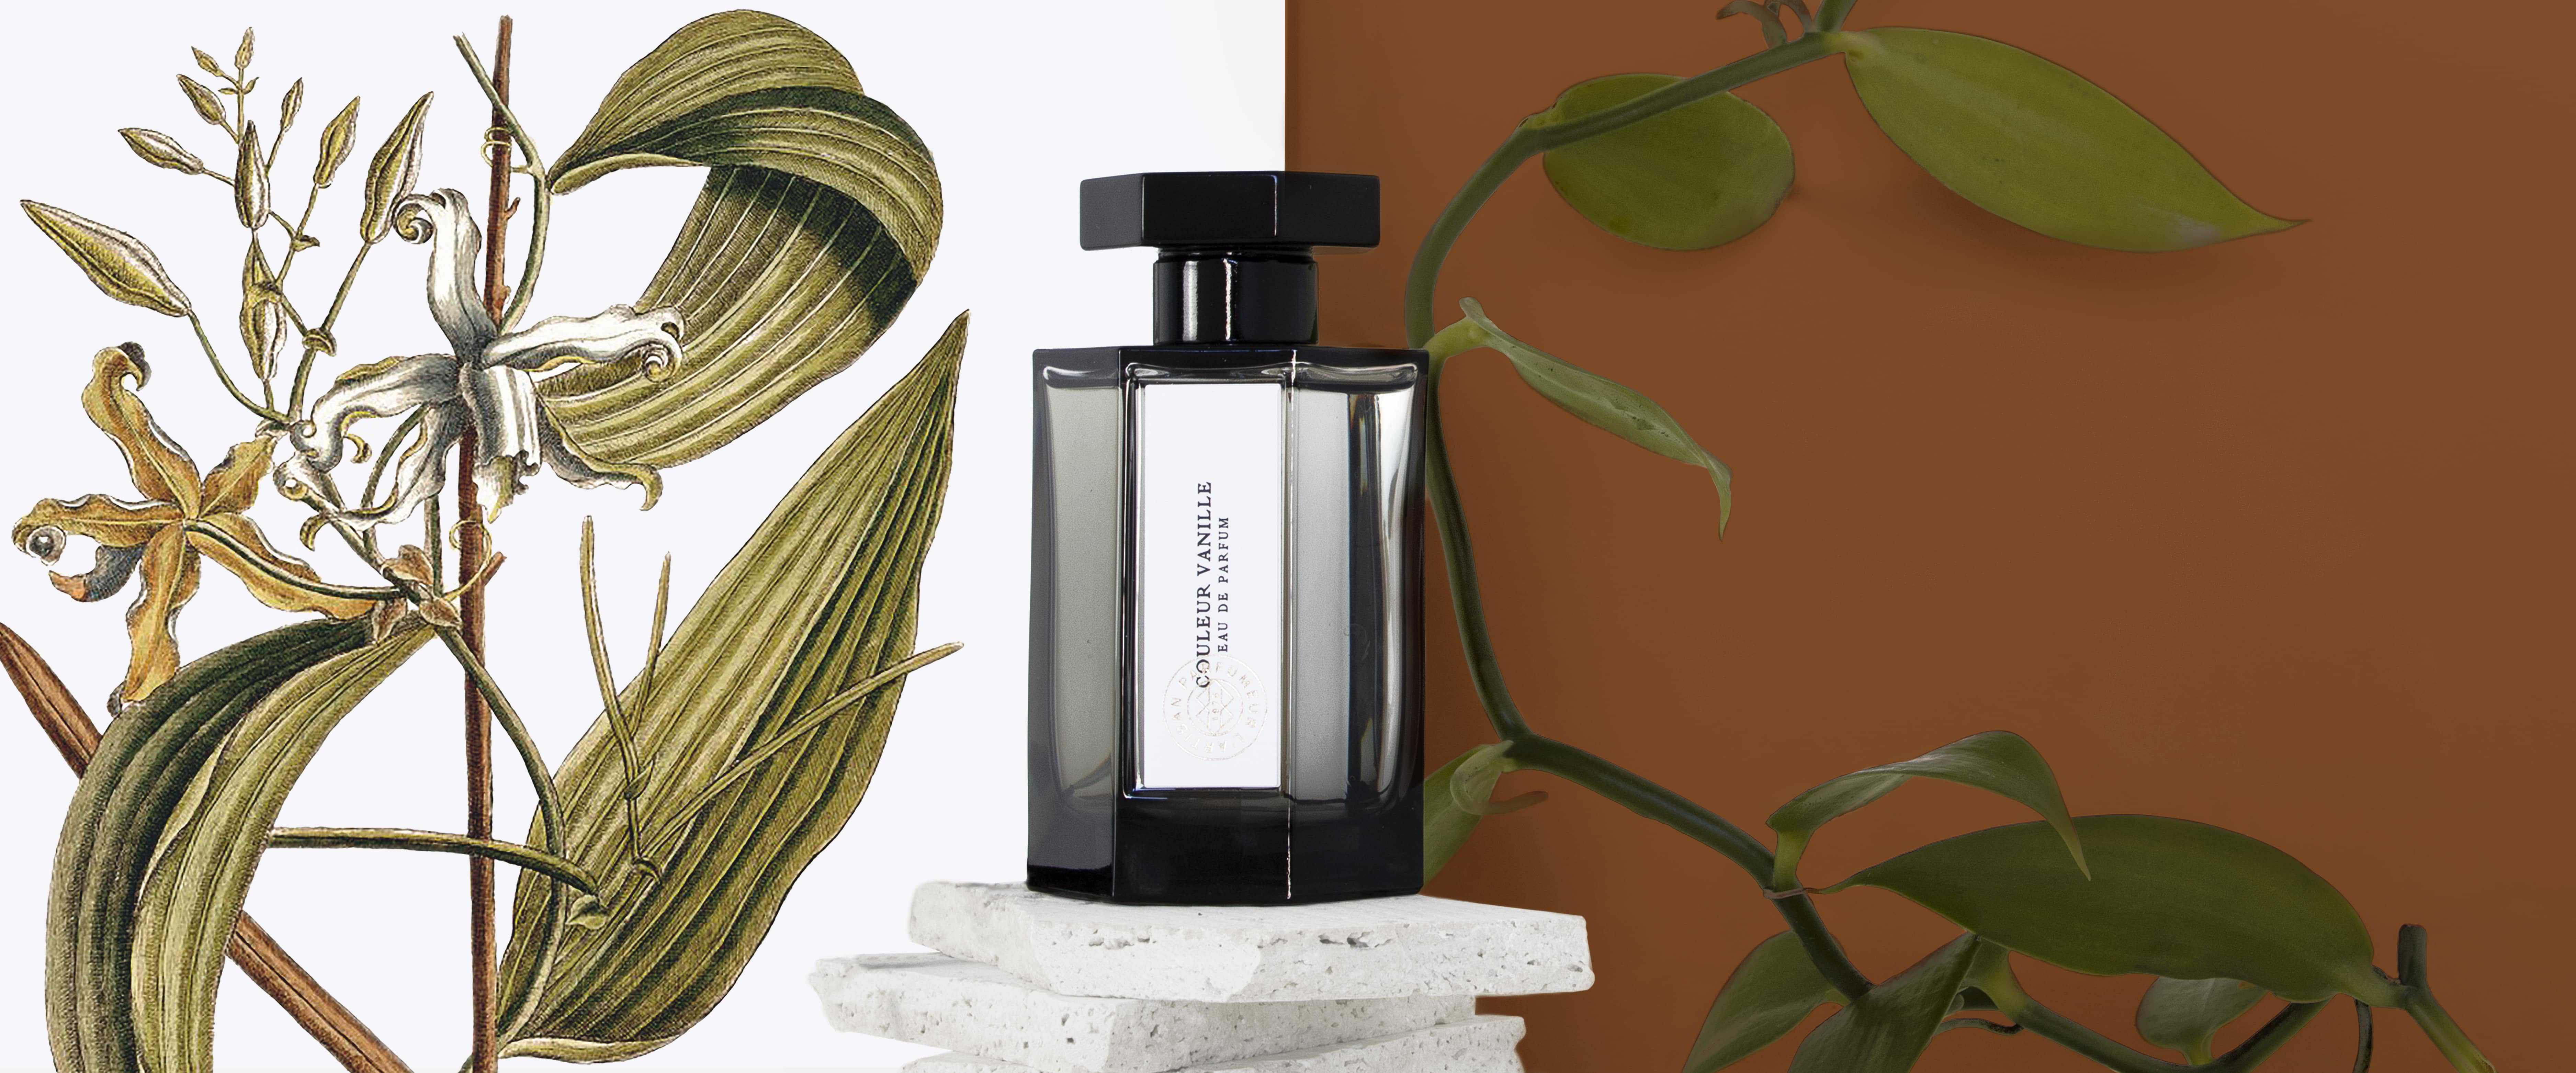 L'Artisan Parfumeur The pour un Ete : Perfume Review - Bois de Jasmin